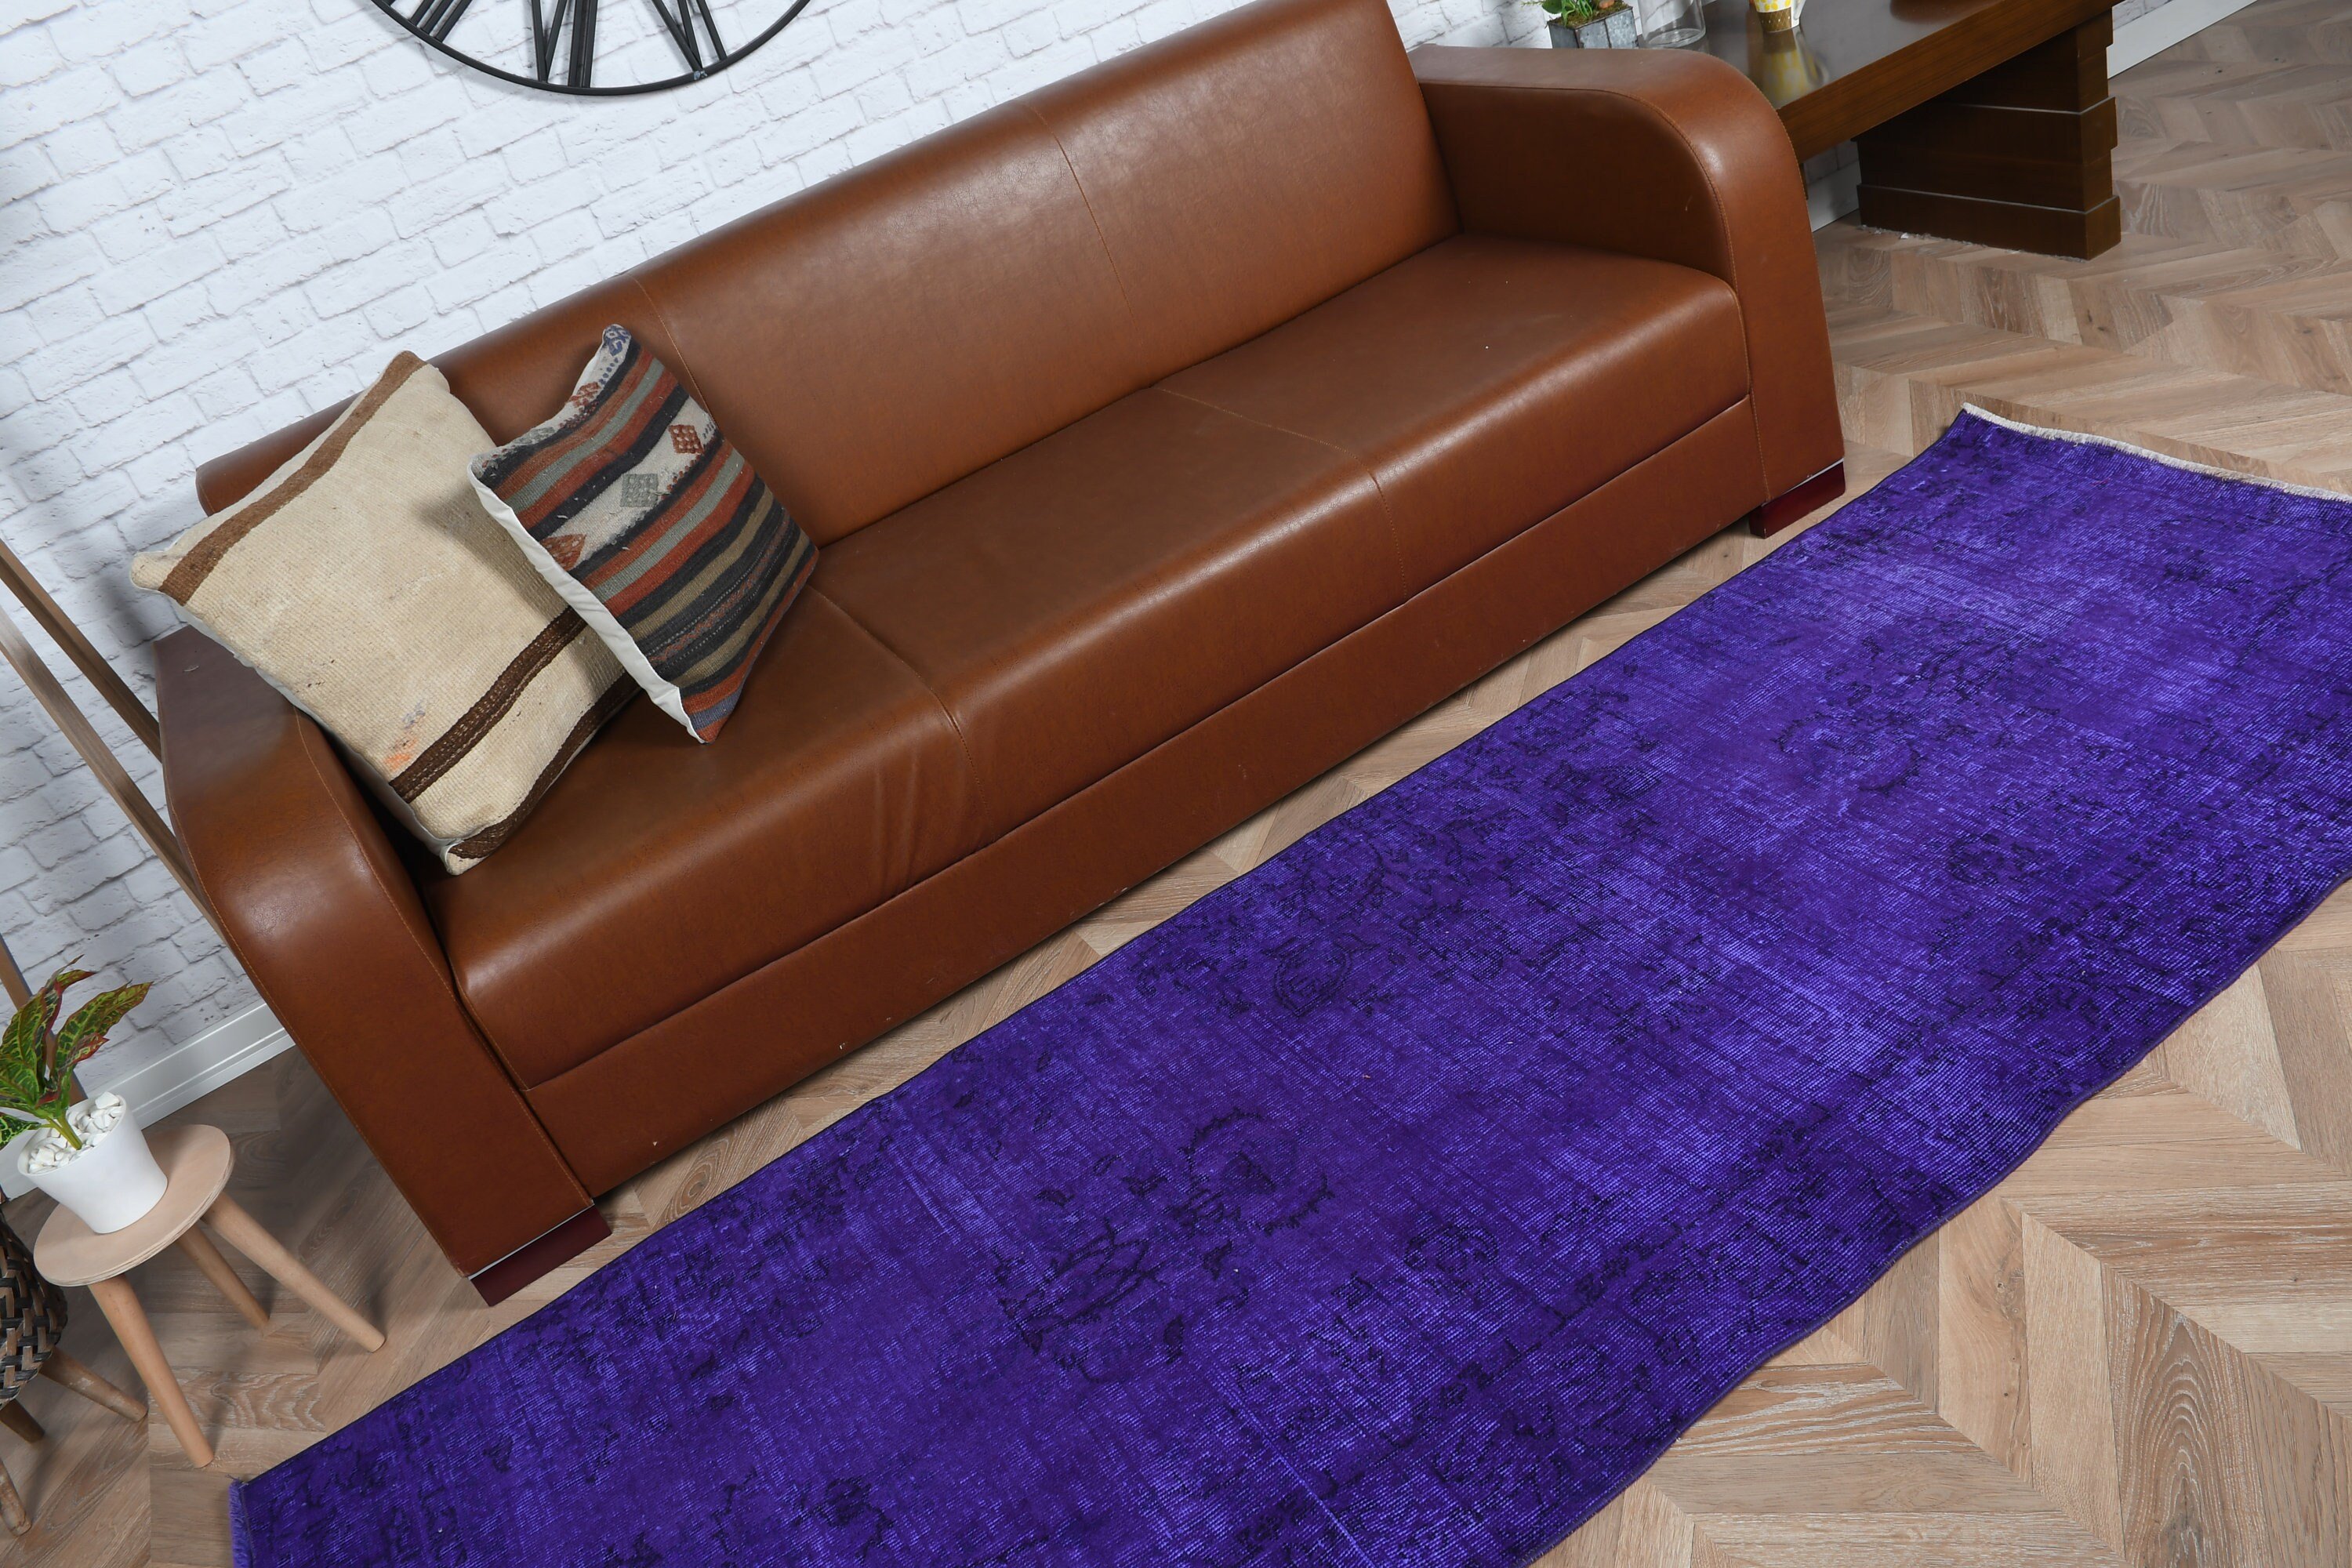 3x8.2 ft Runner Rug, Turkish Rugs, Vintage Rug, Stair Rugs, Wool Rugs, Oriental Rugs, Rugs for Runner, Purple Antique Rug, Corridor Rug